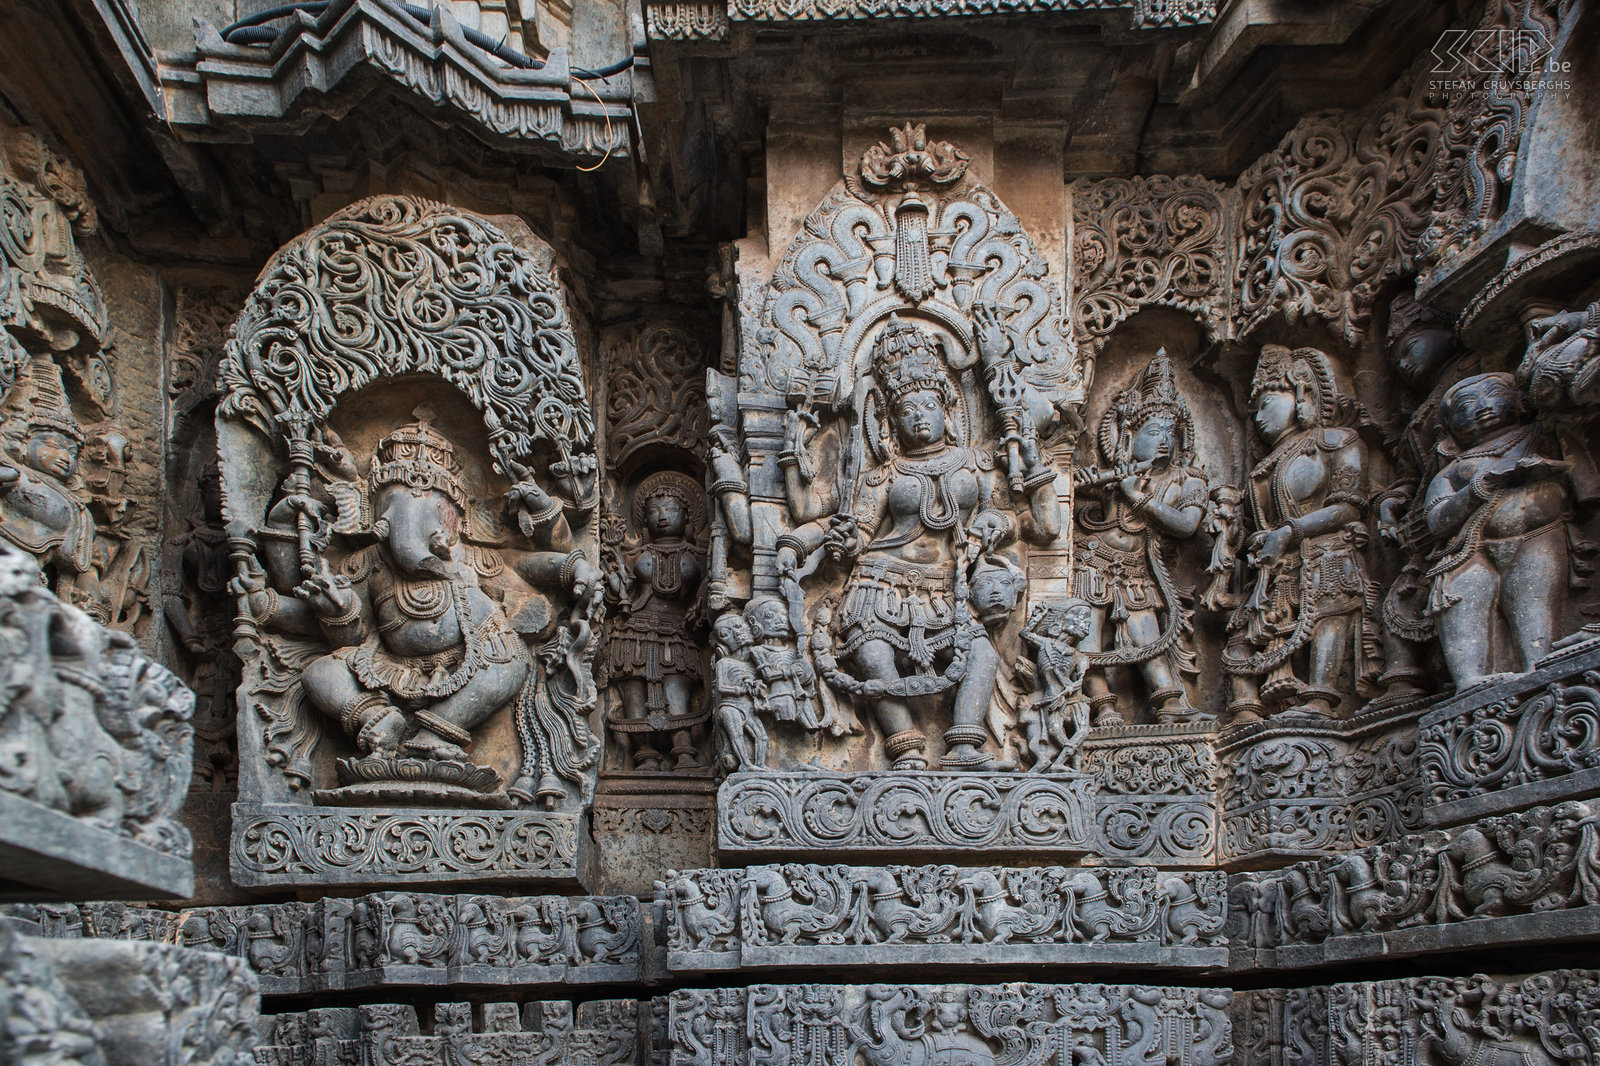 Halebidu De muren van de Hoysala tempel in Halebidu zijn bedekt met een eindeloze verscheidenheid aan reliëfs uit de hindoeïstische mythologie, dieren en dansende figuren. Stefan Cruysberghs